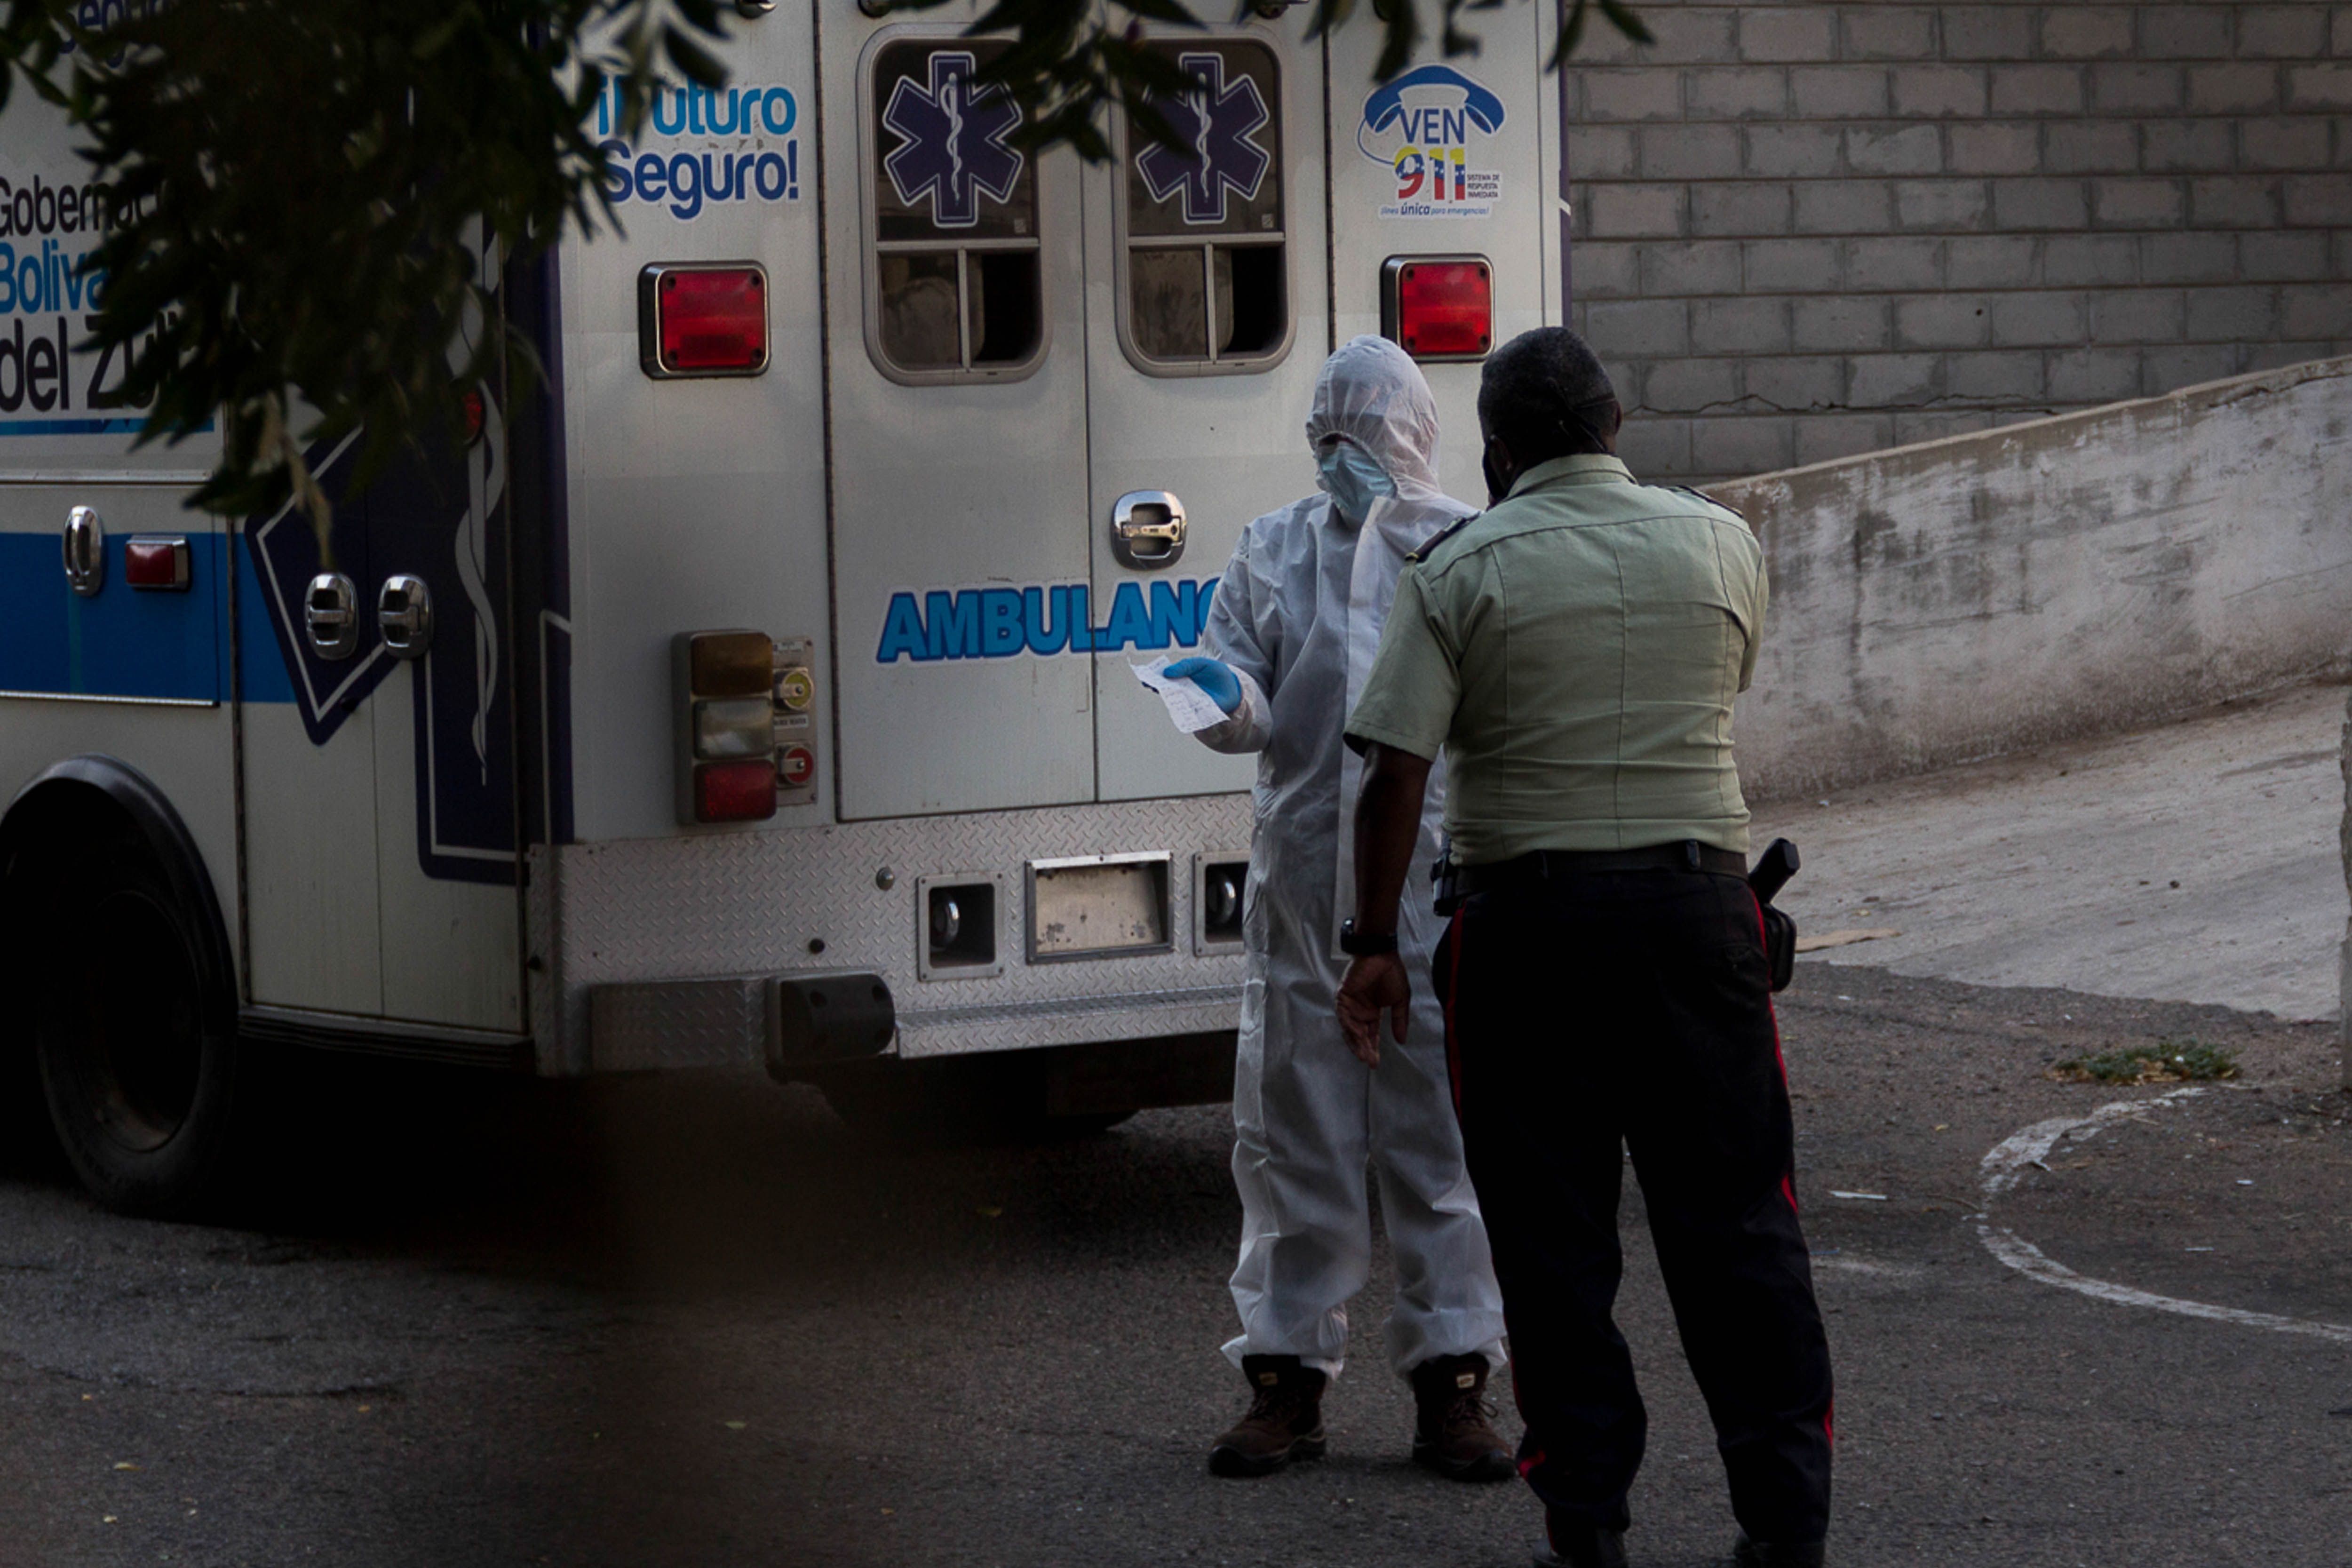 Fotografía del 28 de mayo de 2020 donde se observan miembros de la gobernación del estado Zulia detrás de una ambulancia, momentos antes de buscar a una persona sospechosa de COVID-19, en Maracaibo (Venezuela). EFE/ Henry Chirinos/ Archivo 